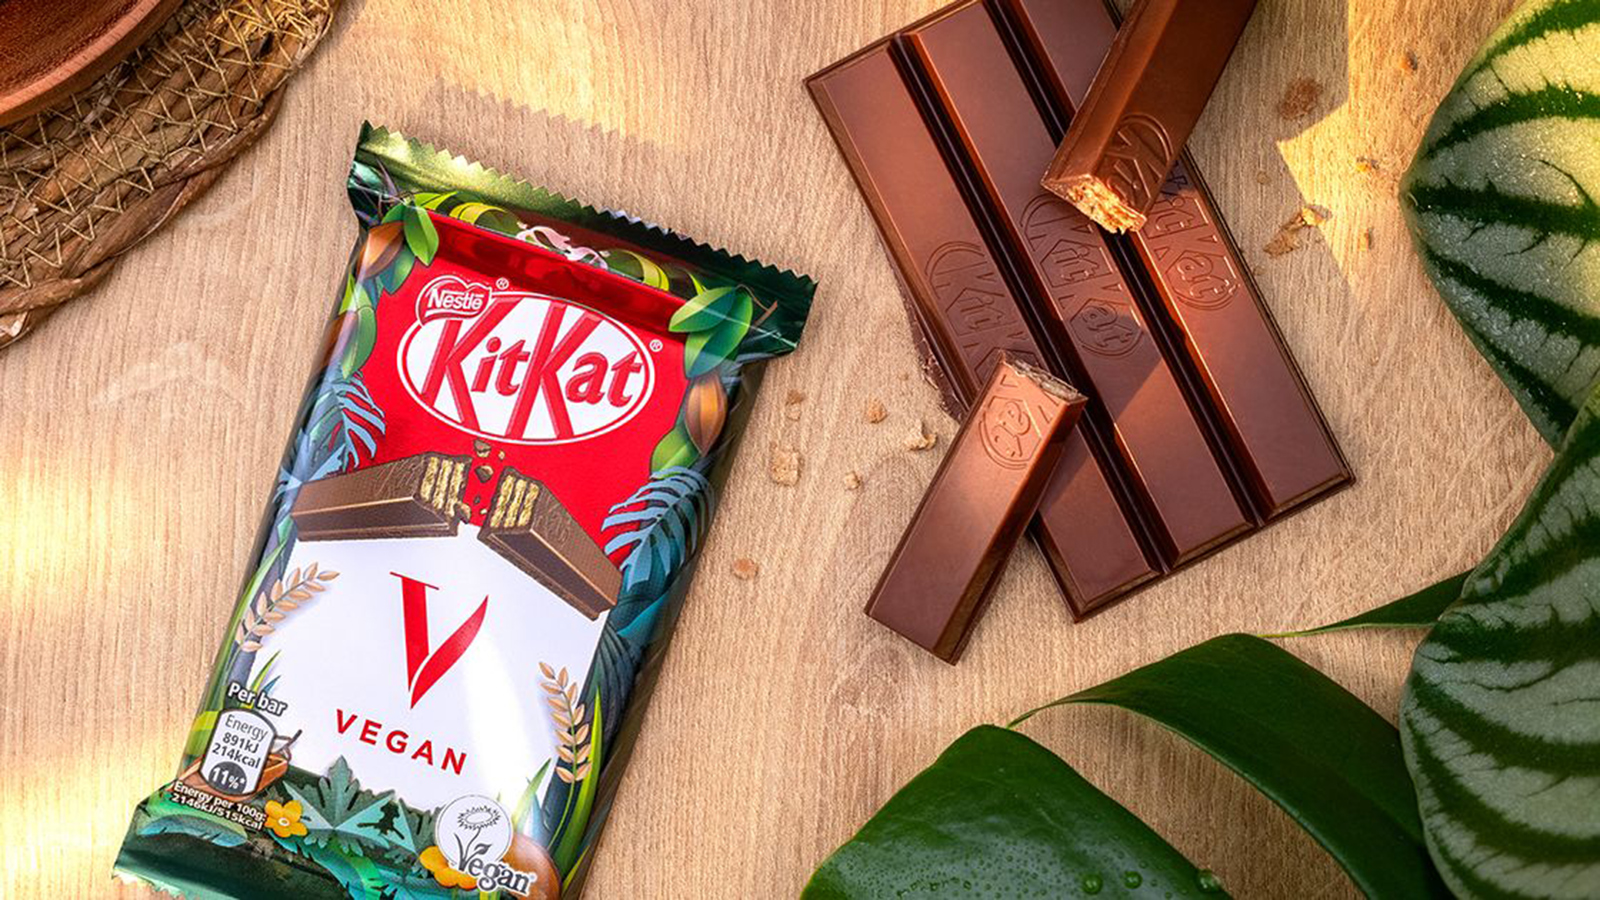 Vegan KitKat chocolate bar by Nestlé